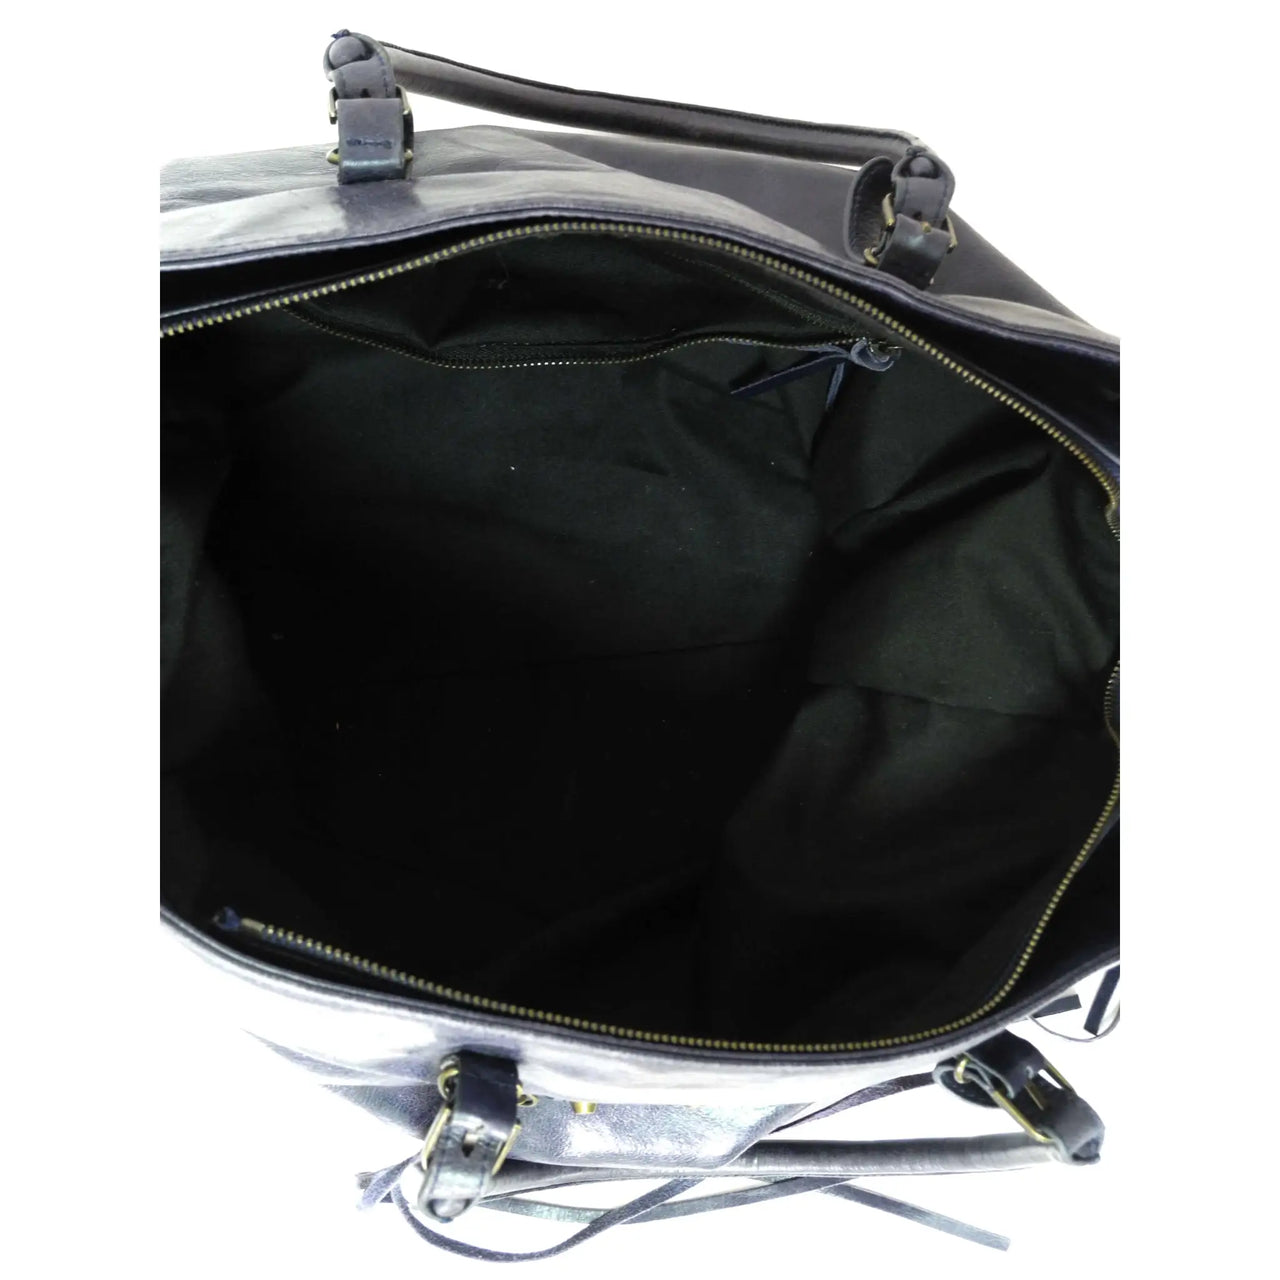 Balenciaga, Bags, Balenciaga Papier A4 Tote Black Leather Large Shoulder  Bag